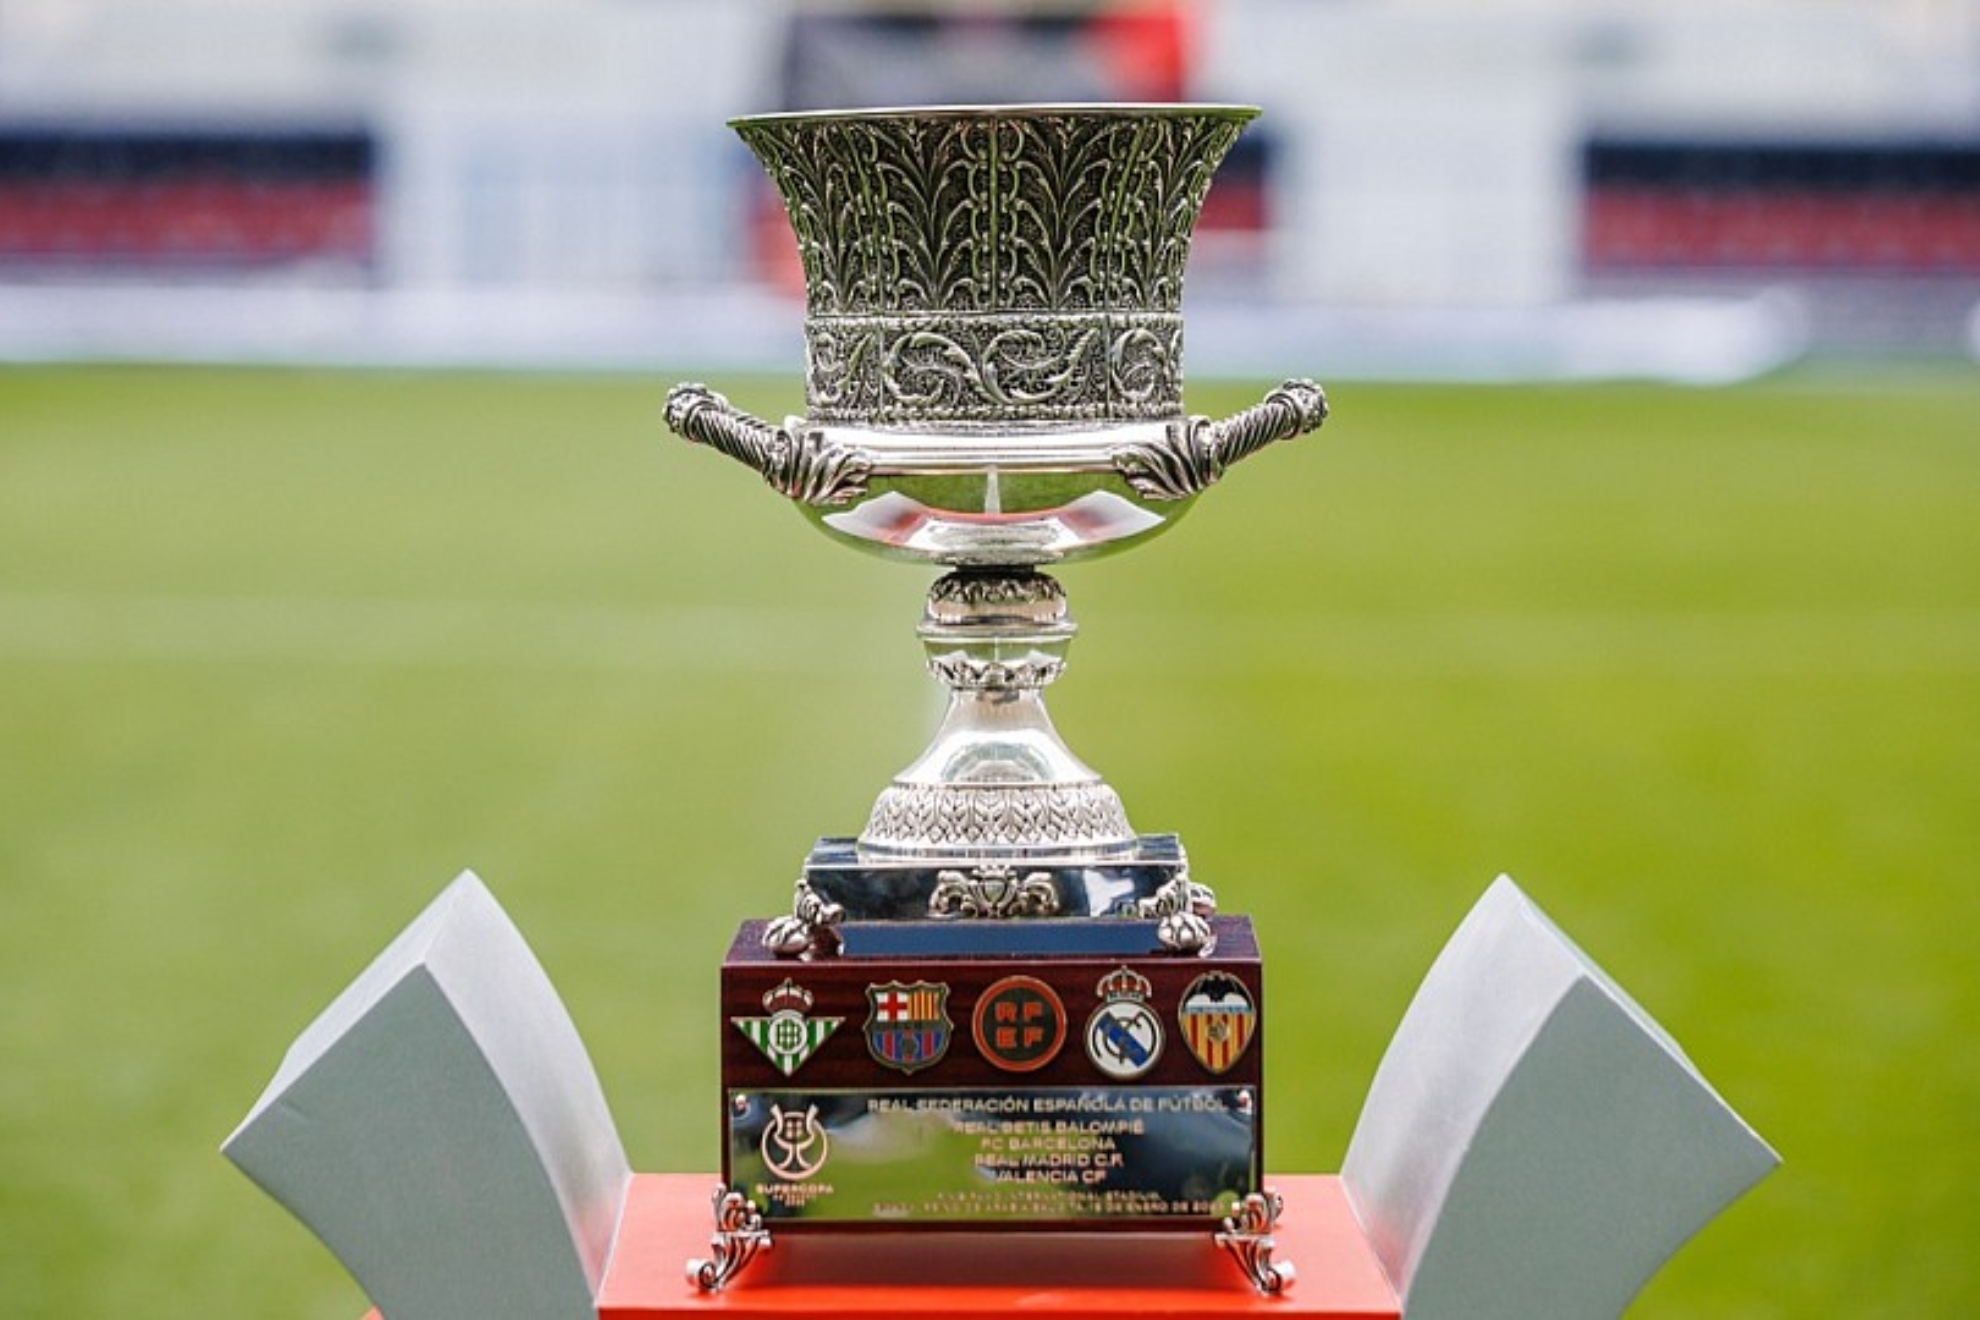 Trofeo de la Supercopa de Espa�a: historia,  qui�n lo dise�a, medidas, peso y materiales